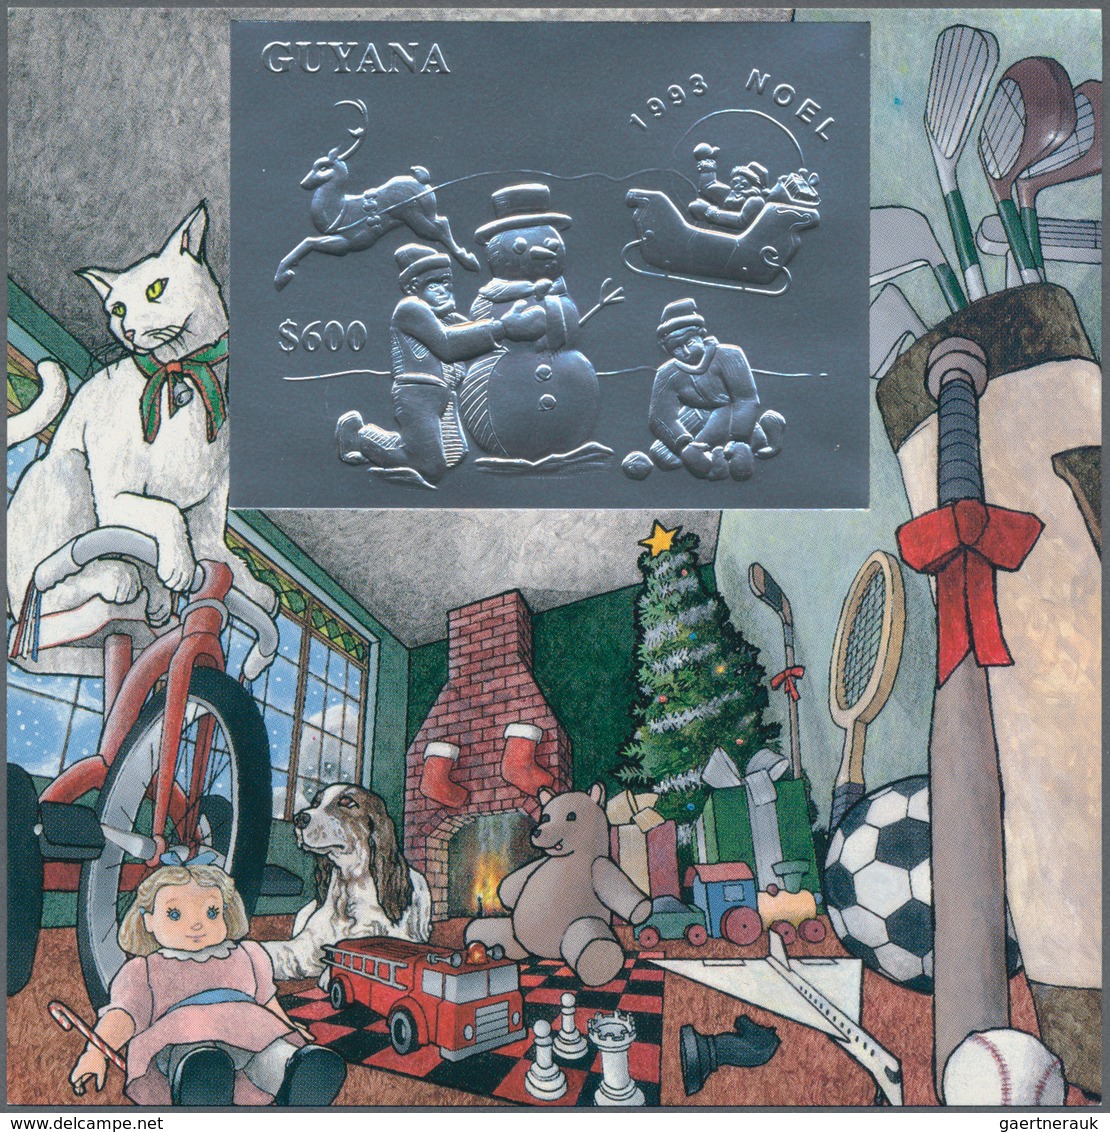 Thematik: Weihnachten / christmas: 1993, Guyana. Set of 8 different souvenir sheets CHRISTMAS, each